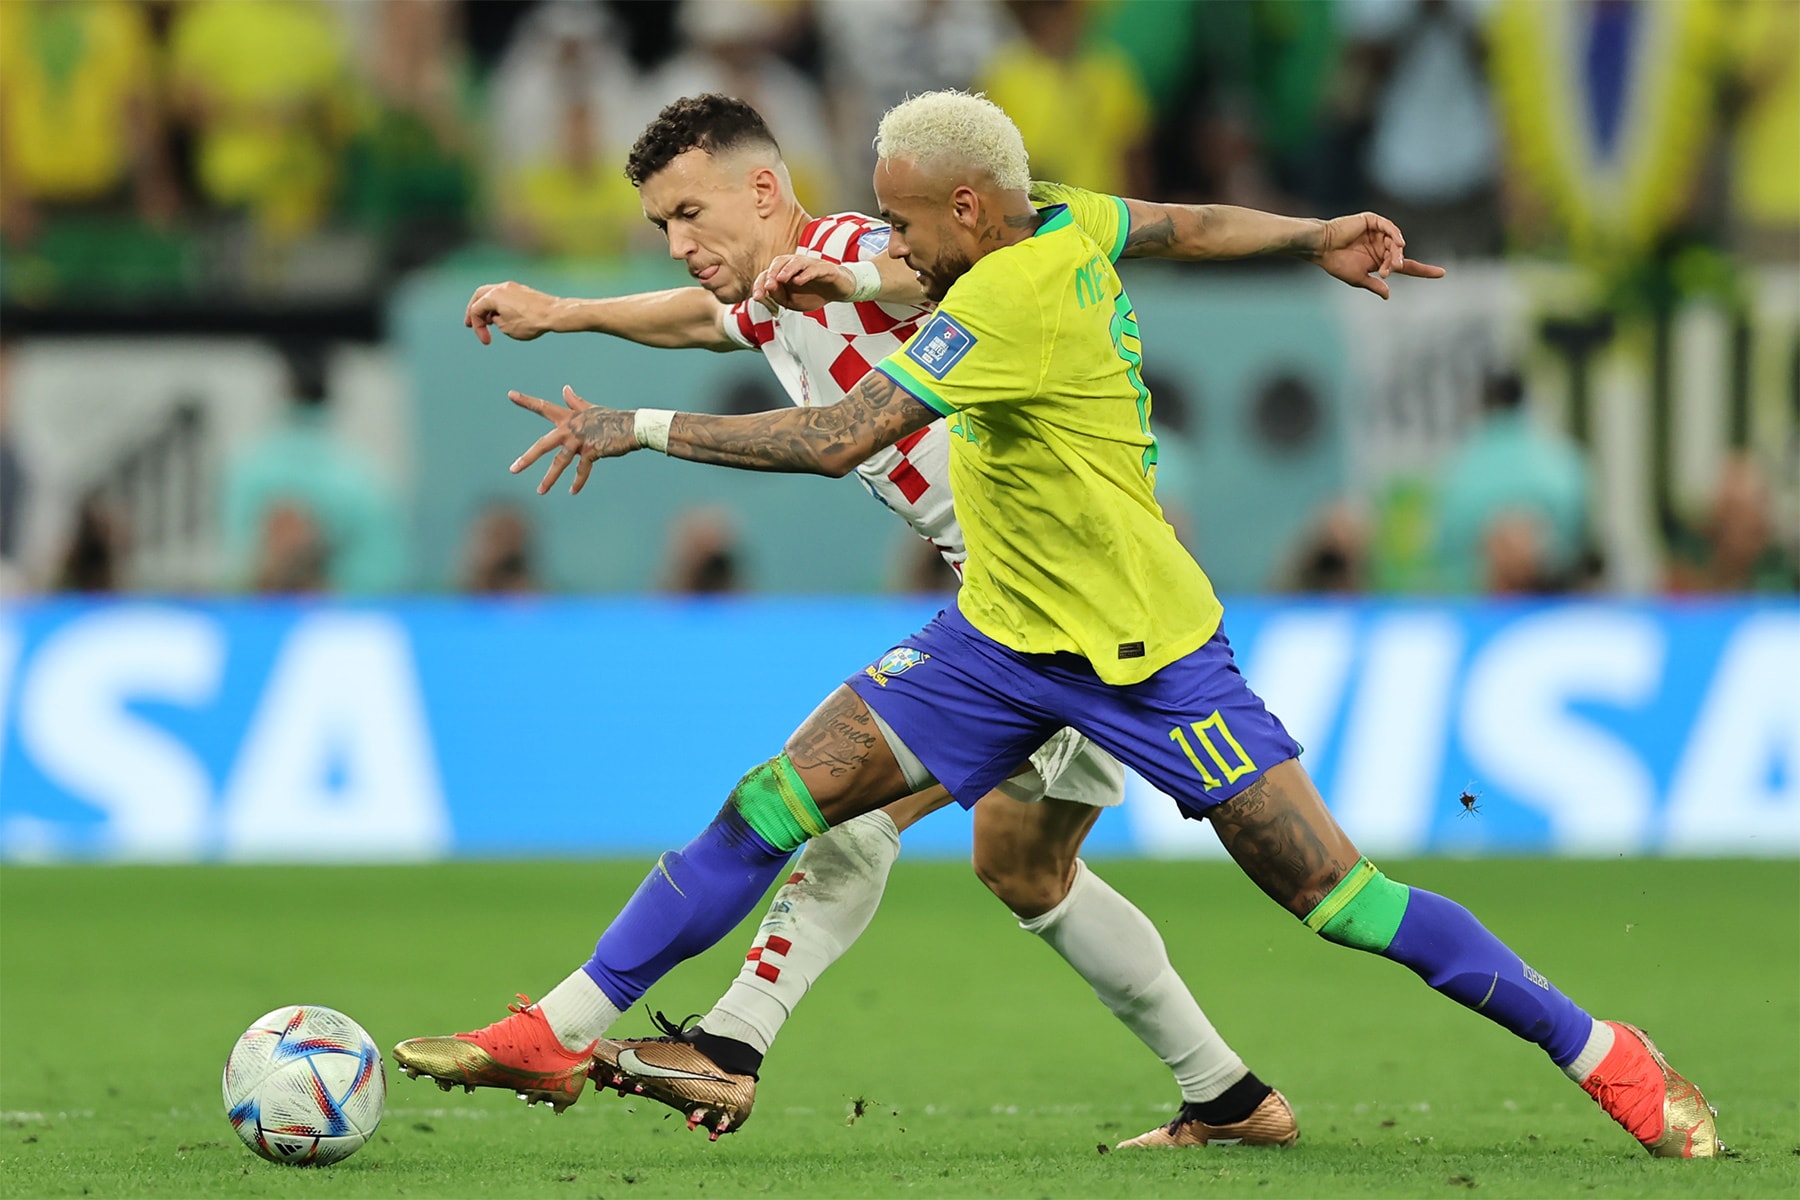 2022 世界盃 – Neymar 延長賽得分白費，克羅埃西亞點球大戰勝出正式晉級四強